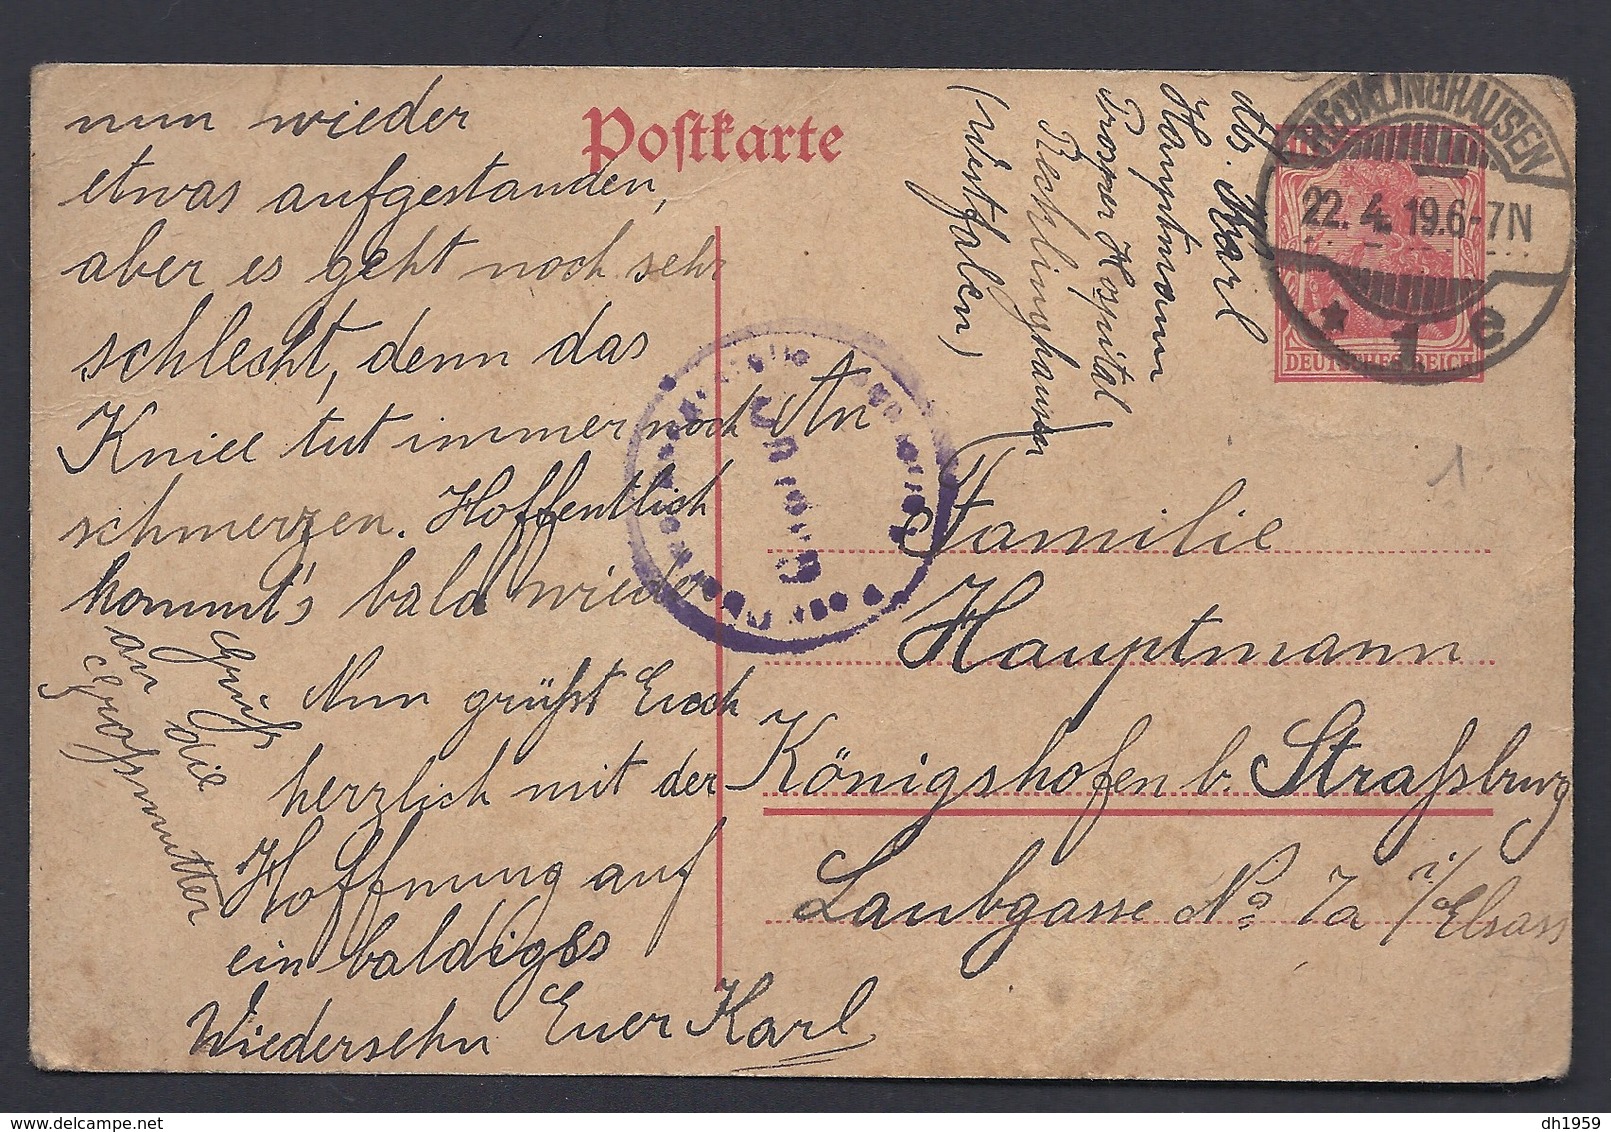 RECKLINGHAUSEN PROSPER HOSPITAL HOPITAL 1919 Nach STRASSBURG - Recklinghausen